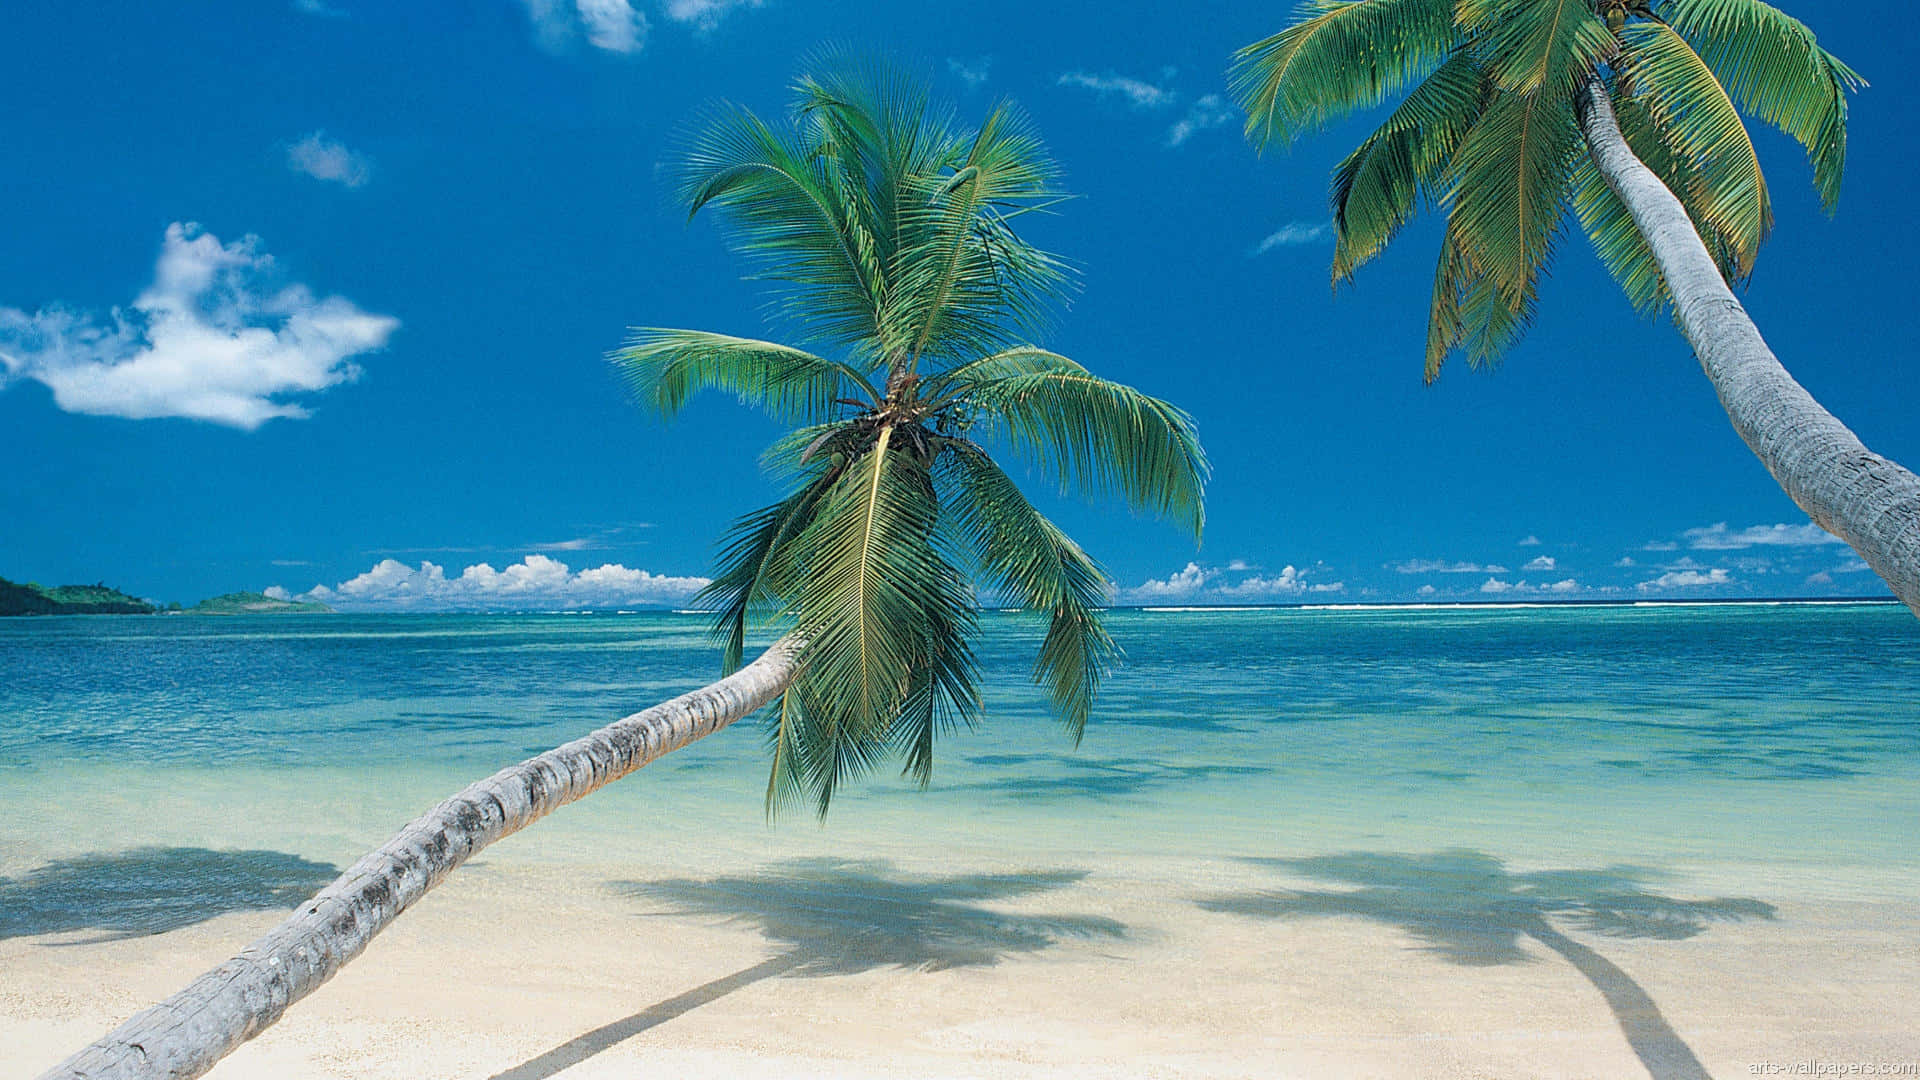 Tag et hvil fra virkeligheden og flygt til denne fredelige tropiske strand. Wallpaper